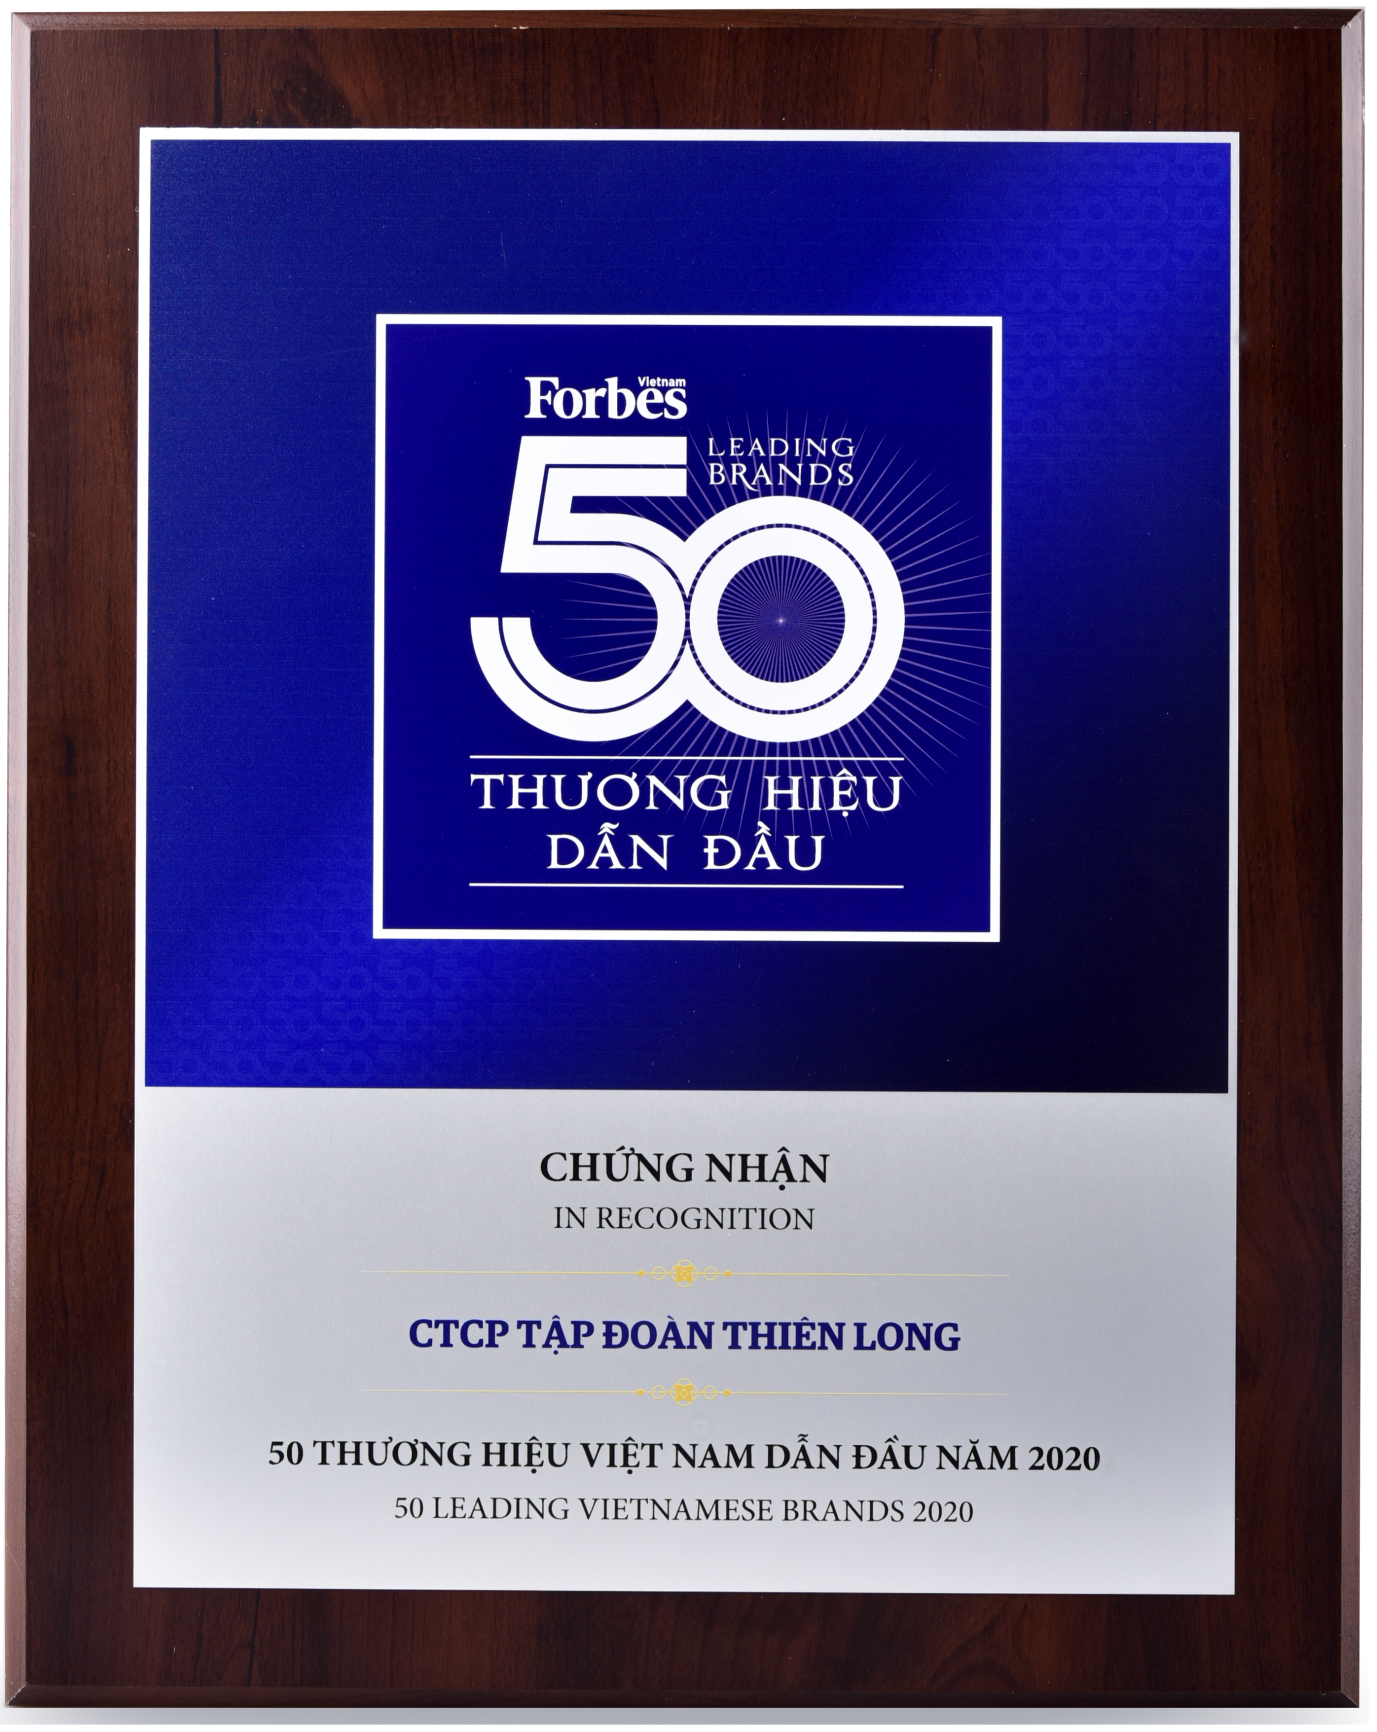 thien long group enters top 50 brands vietnam and asias 200 best under a billion list